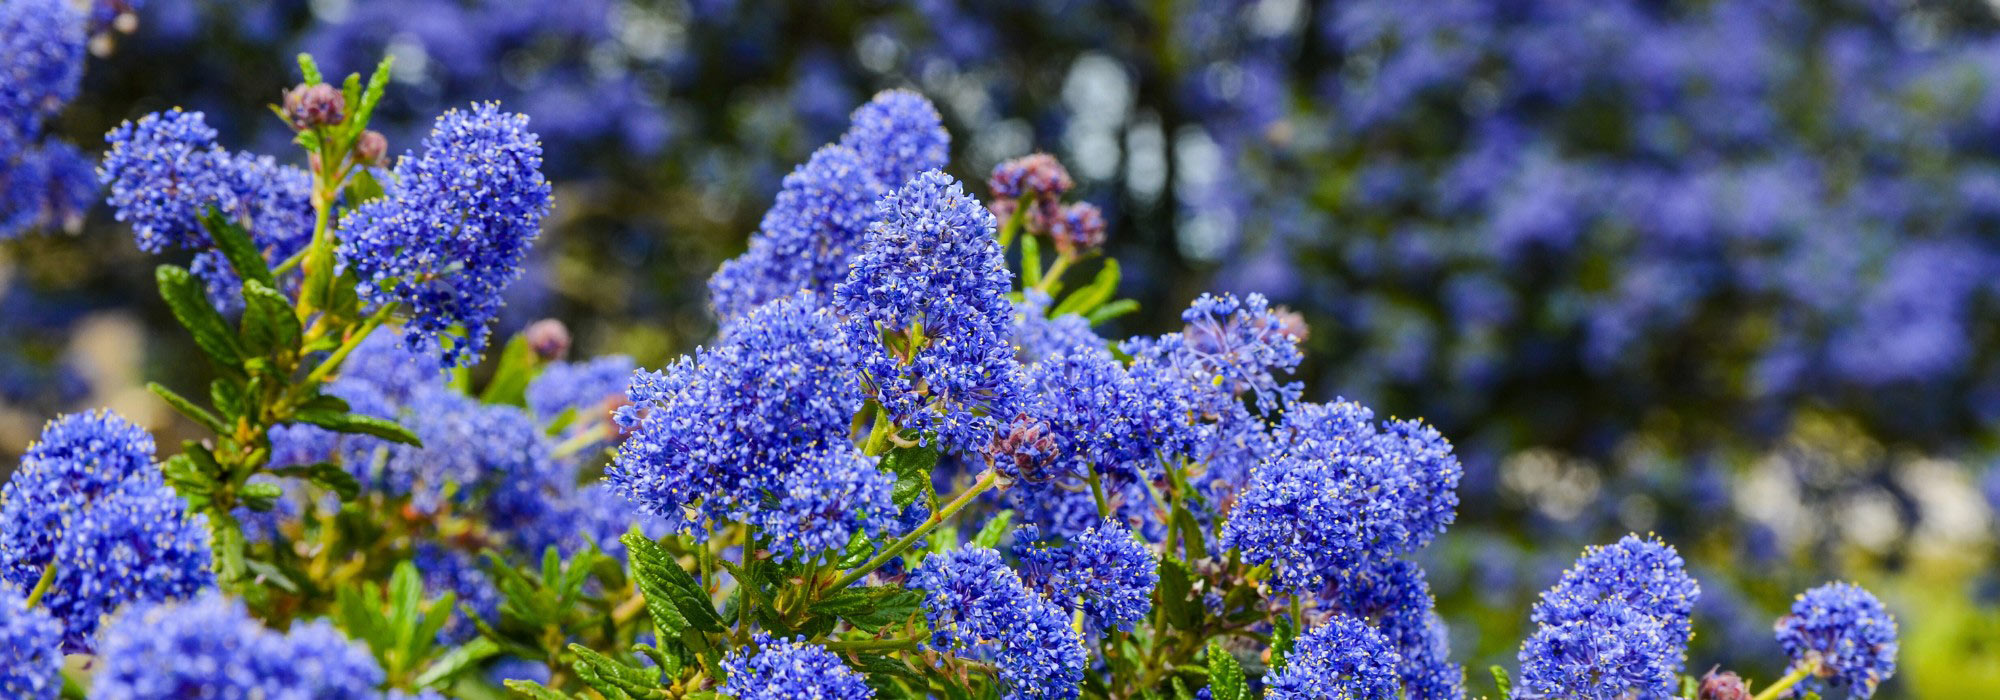 Tendance : sublimez votre jardin avec le bleu indigo !